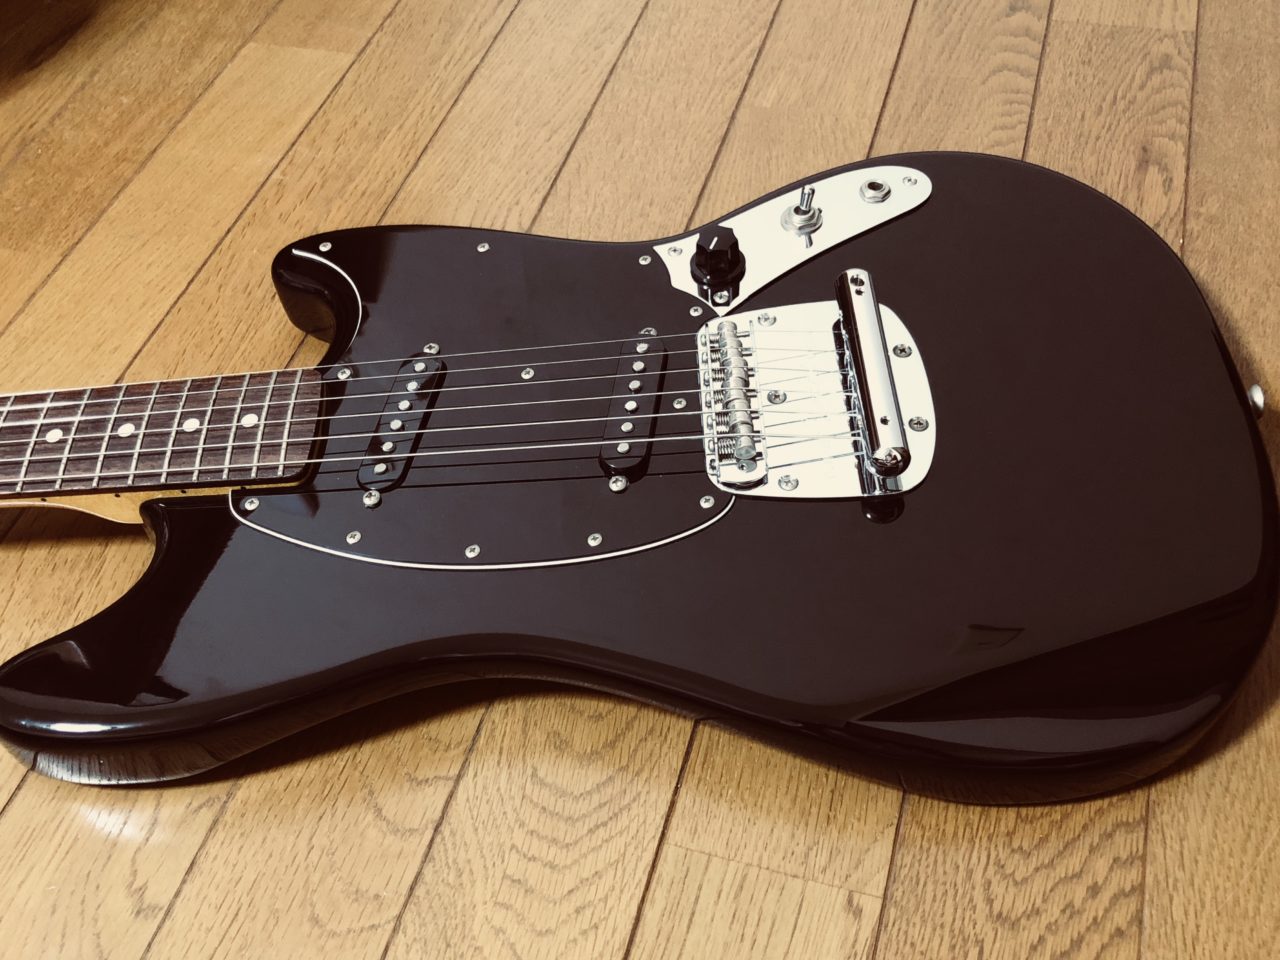 VAMPSのハイド仕様のムスタング！「Fender Japan MG69/MH/DP」を購入したのでレビューしてみる。